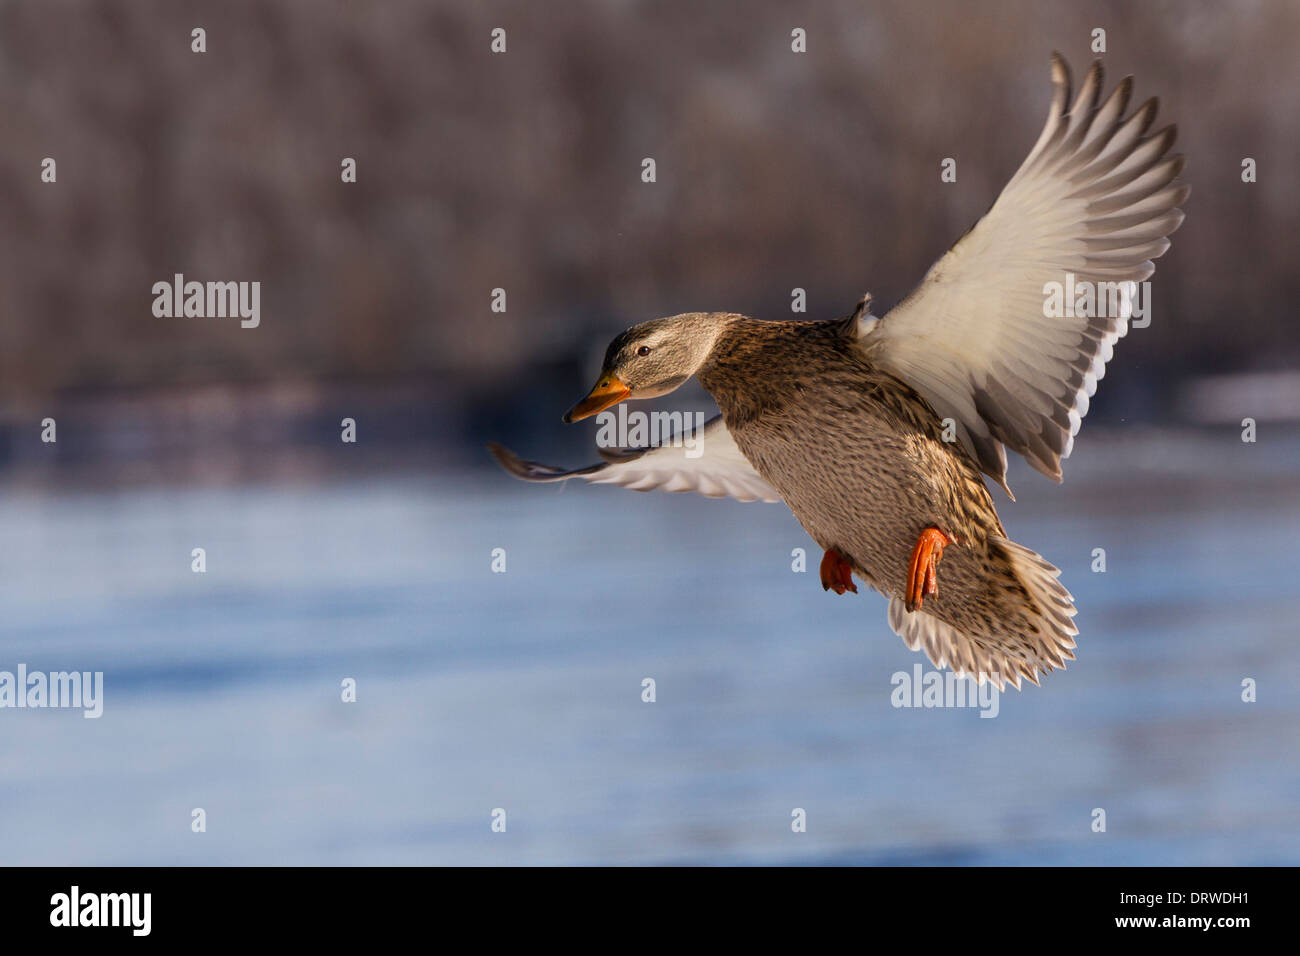 Mallard duck in flight in Canadian harsh winter. Stock Photo